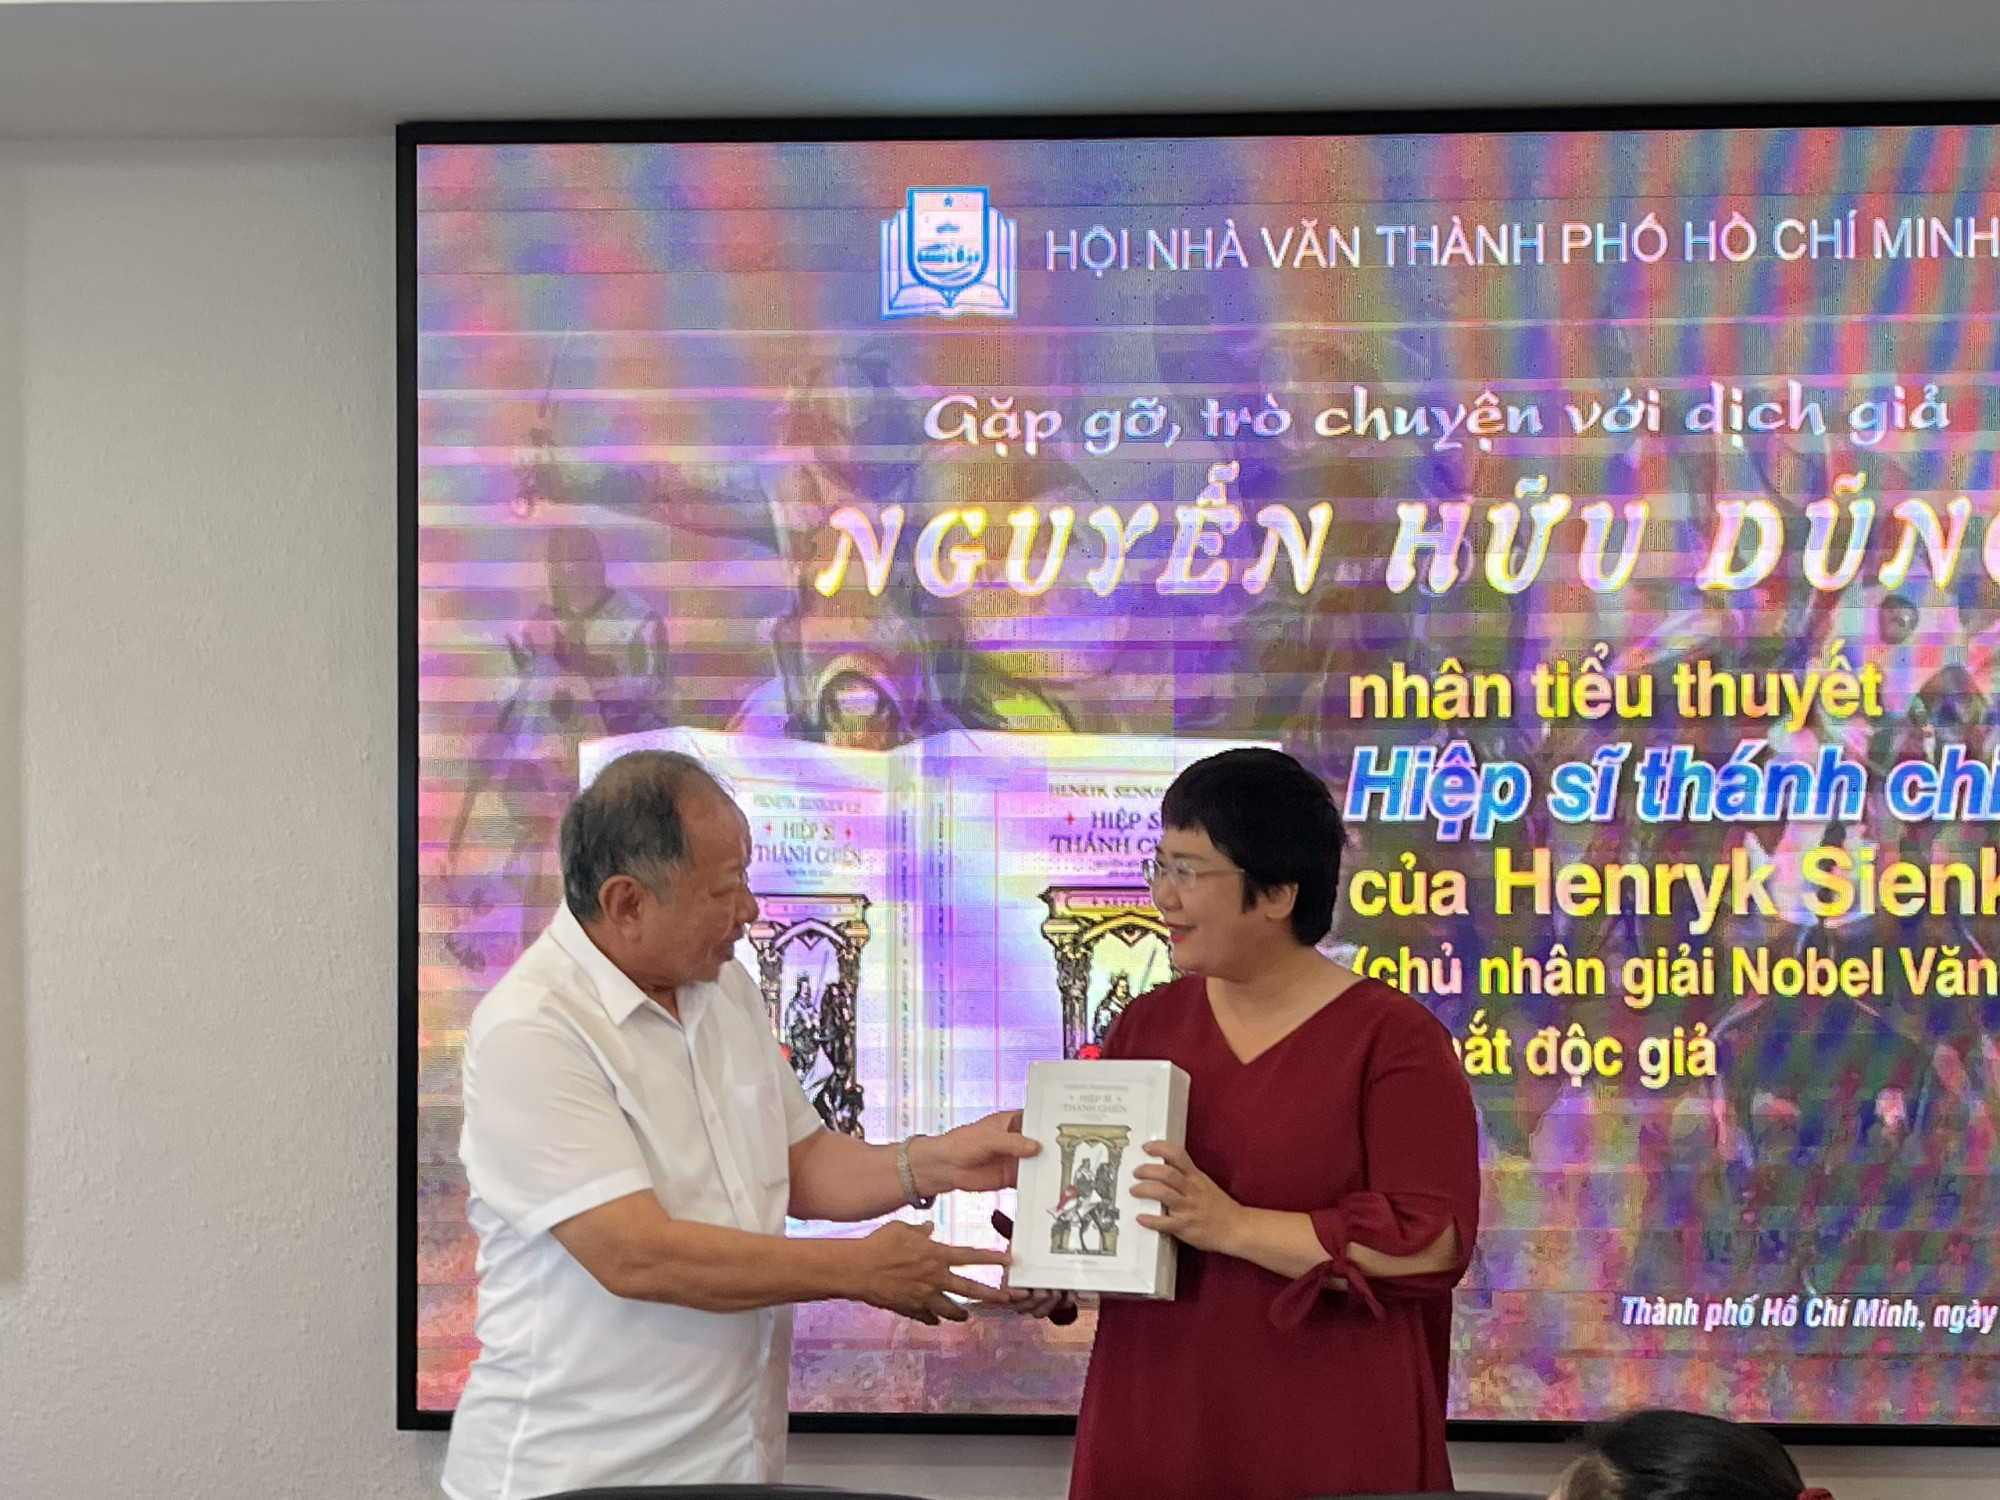 Dịch giả Nguyễn Hữu Dũng (trái) trao tặng bộ sách cho bà Nguyễn Lệ Chi, Giám đốc Chibooks, đại dịch Hội đồng Văn học dịch-Hội Nhà văn TPHCM